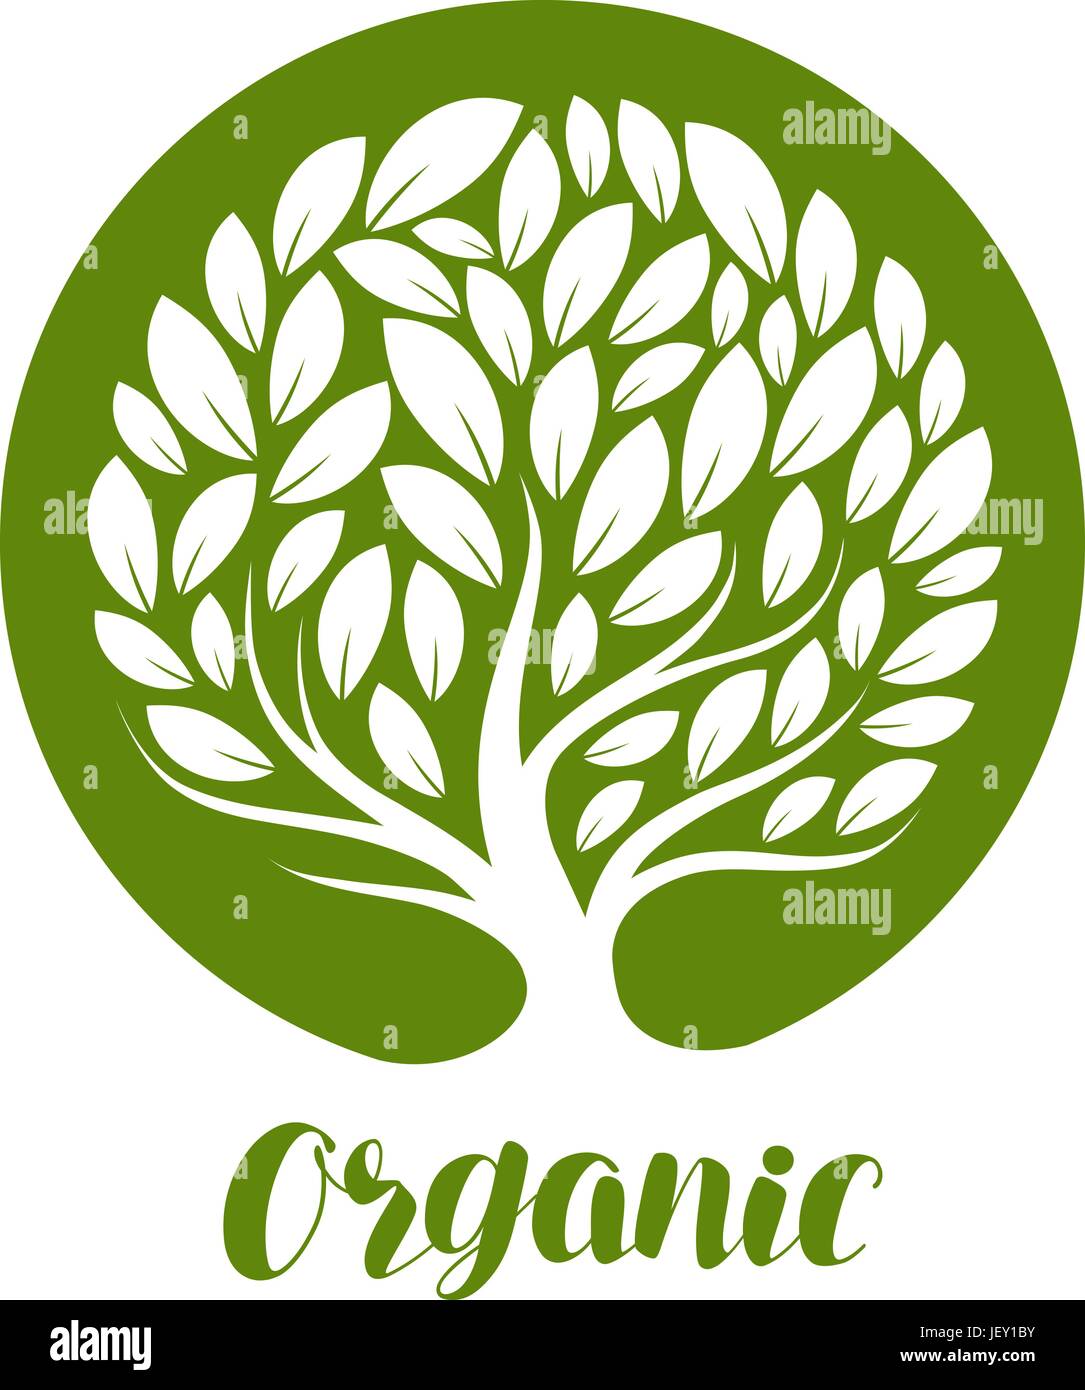 Abstrakte dekorative Baum mit Blättern. Ökologie, natürliche, organische Etikett oder Logo. Vektor-illustration Stock Vektor